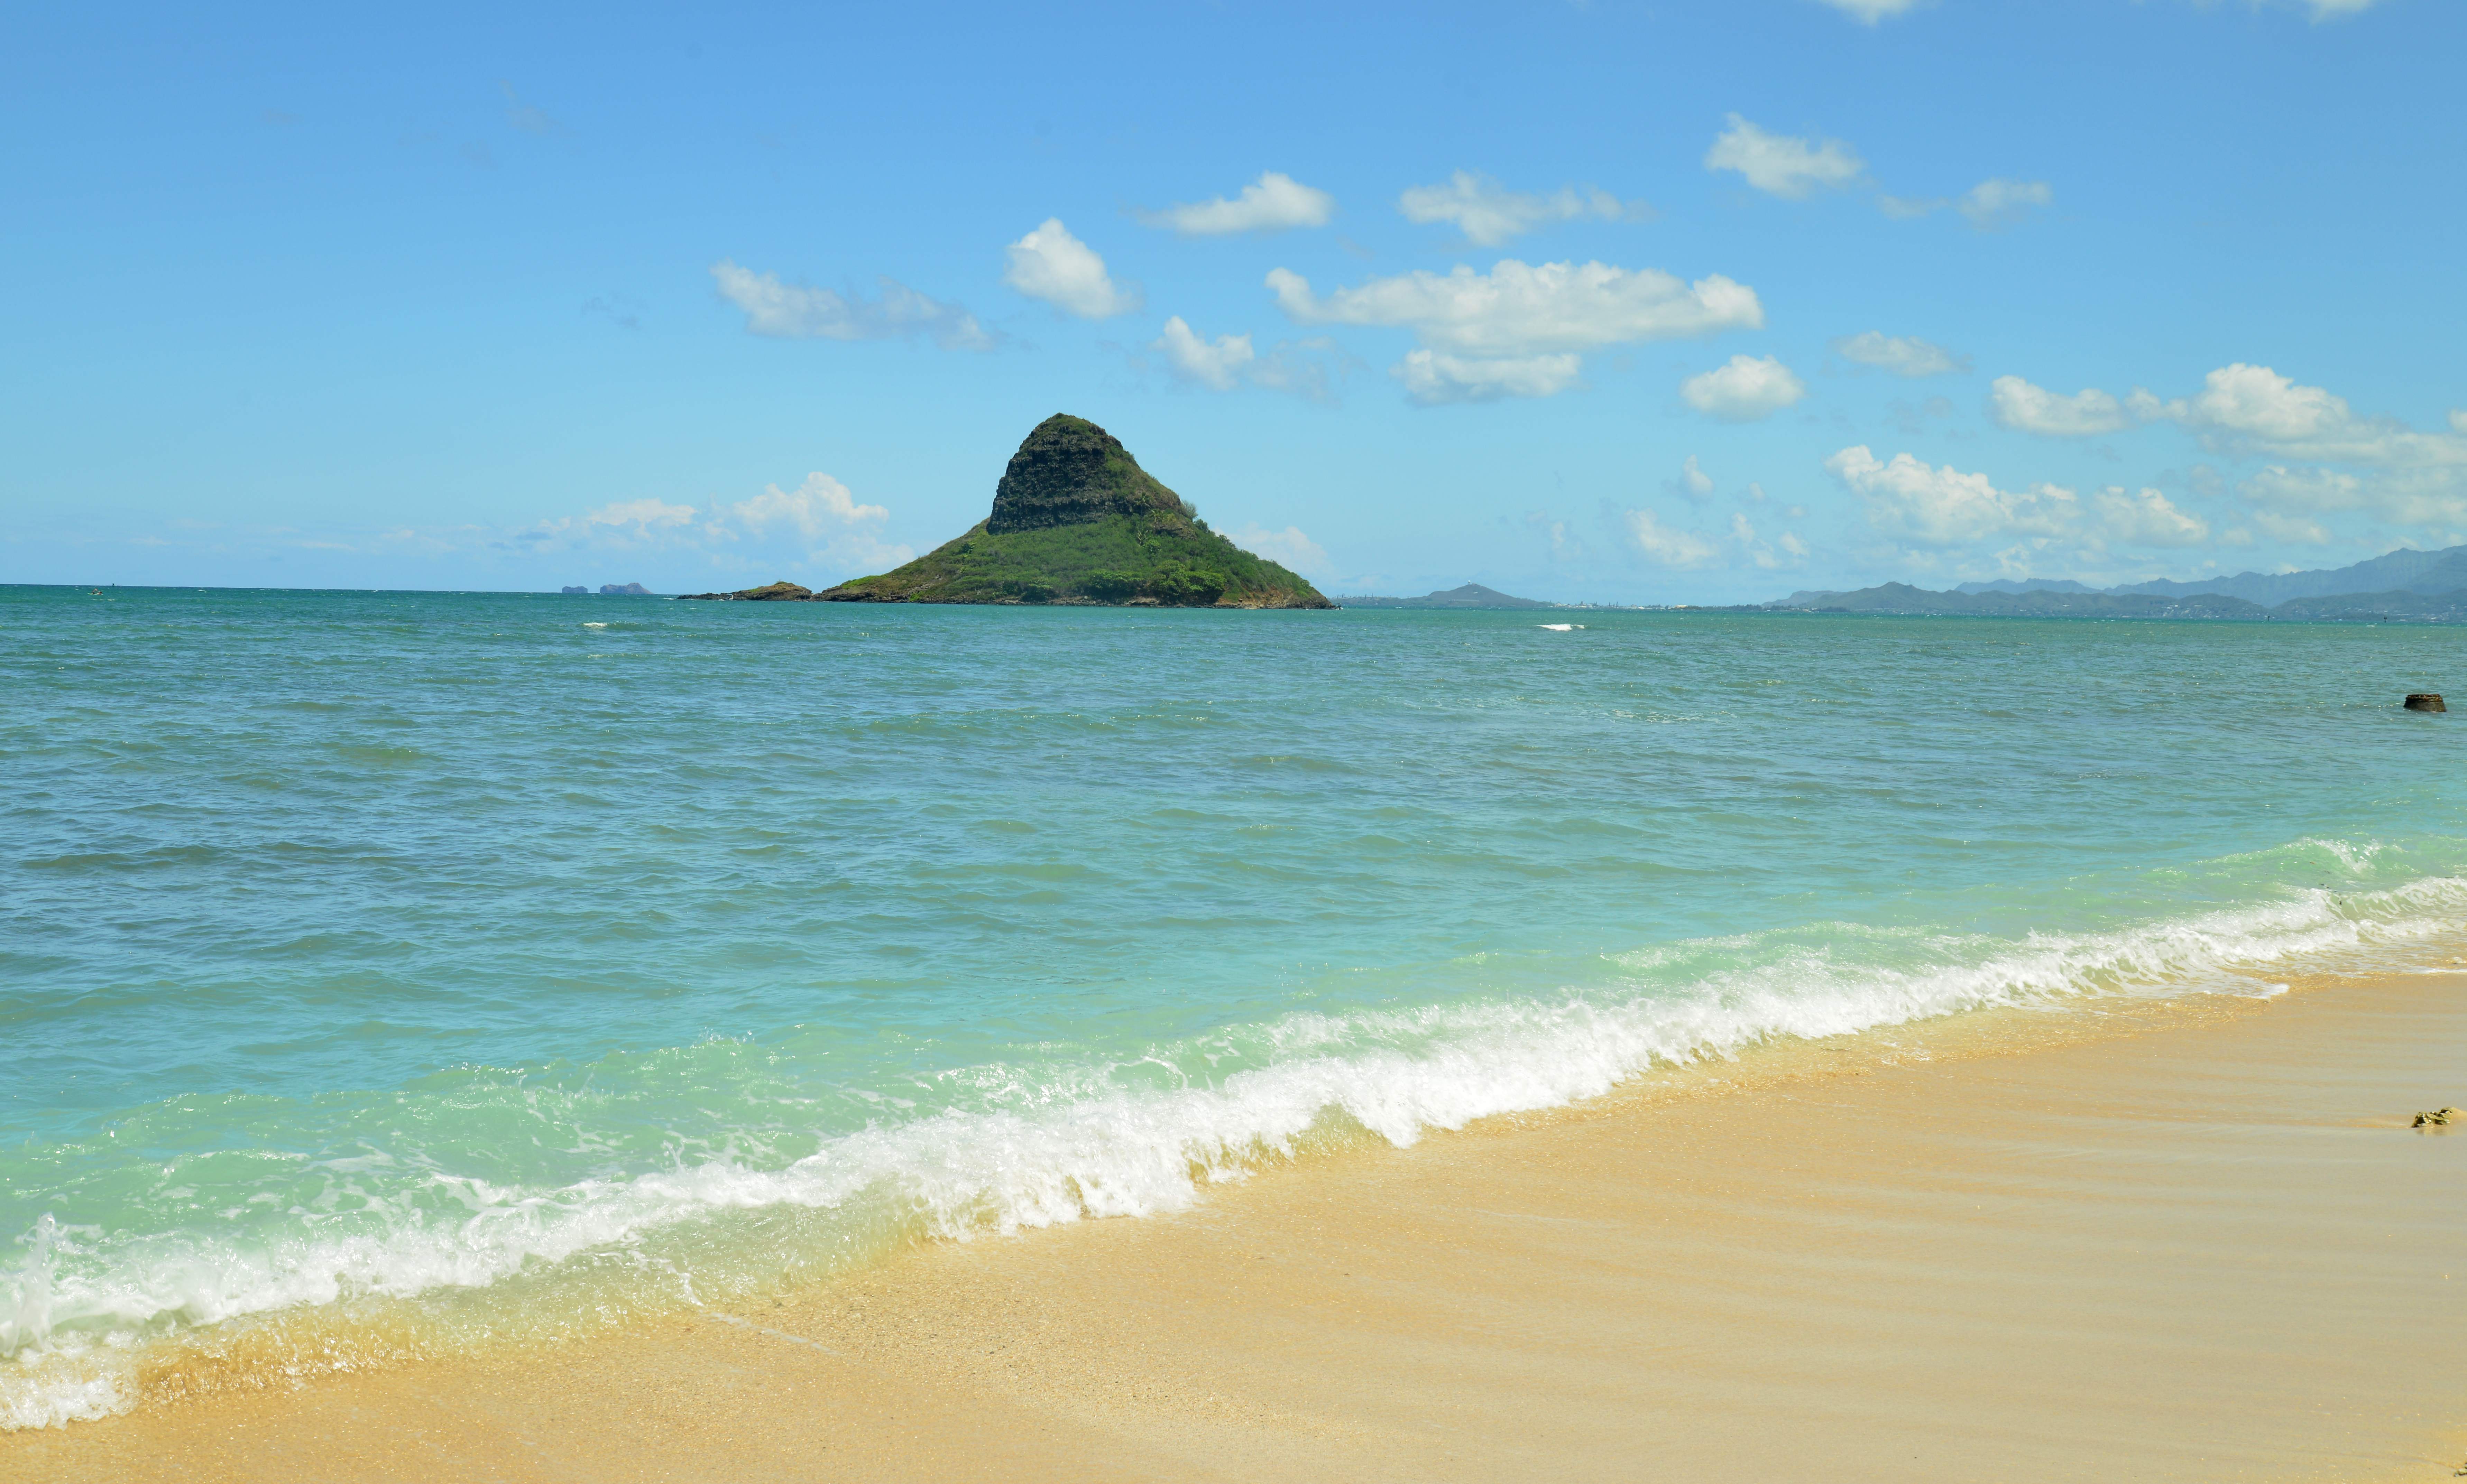 全球16座最独特的迷人沙滩 (2) ---- 夏威夷| Papakōlea绿沙滩 - 知乎